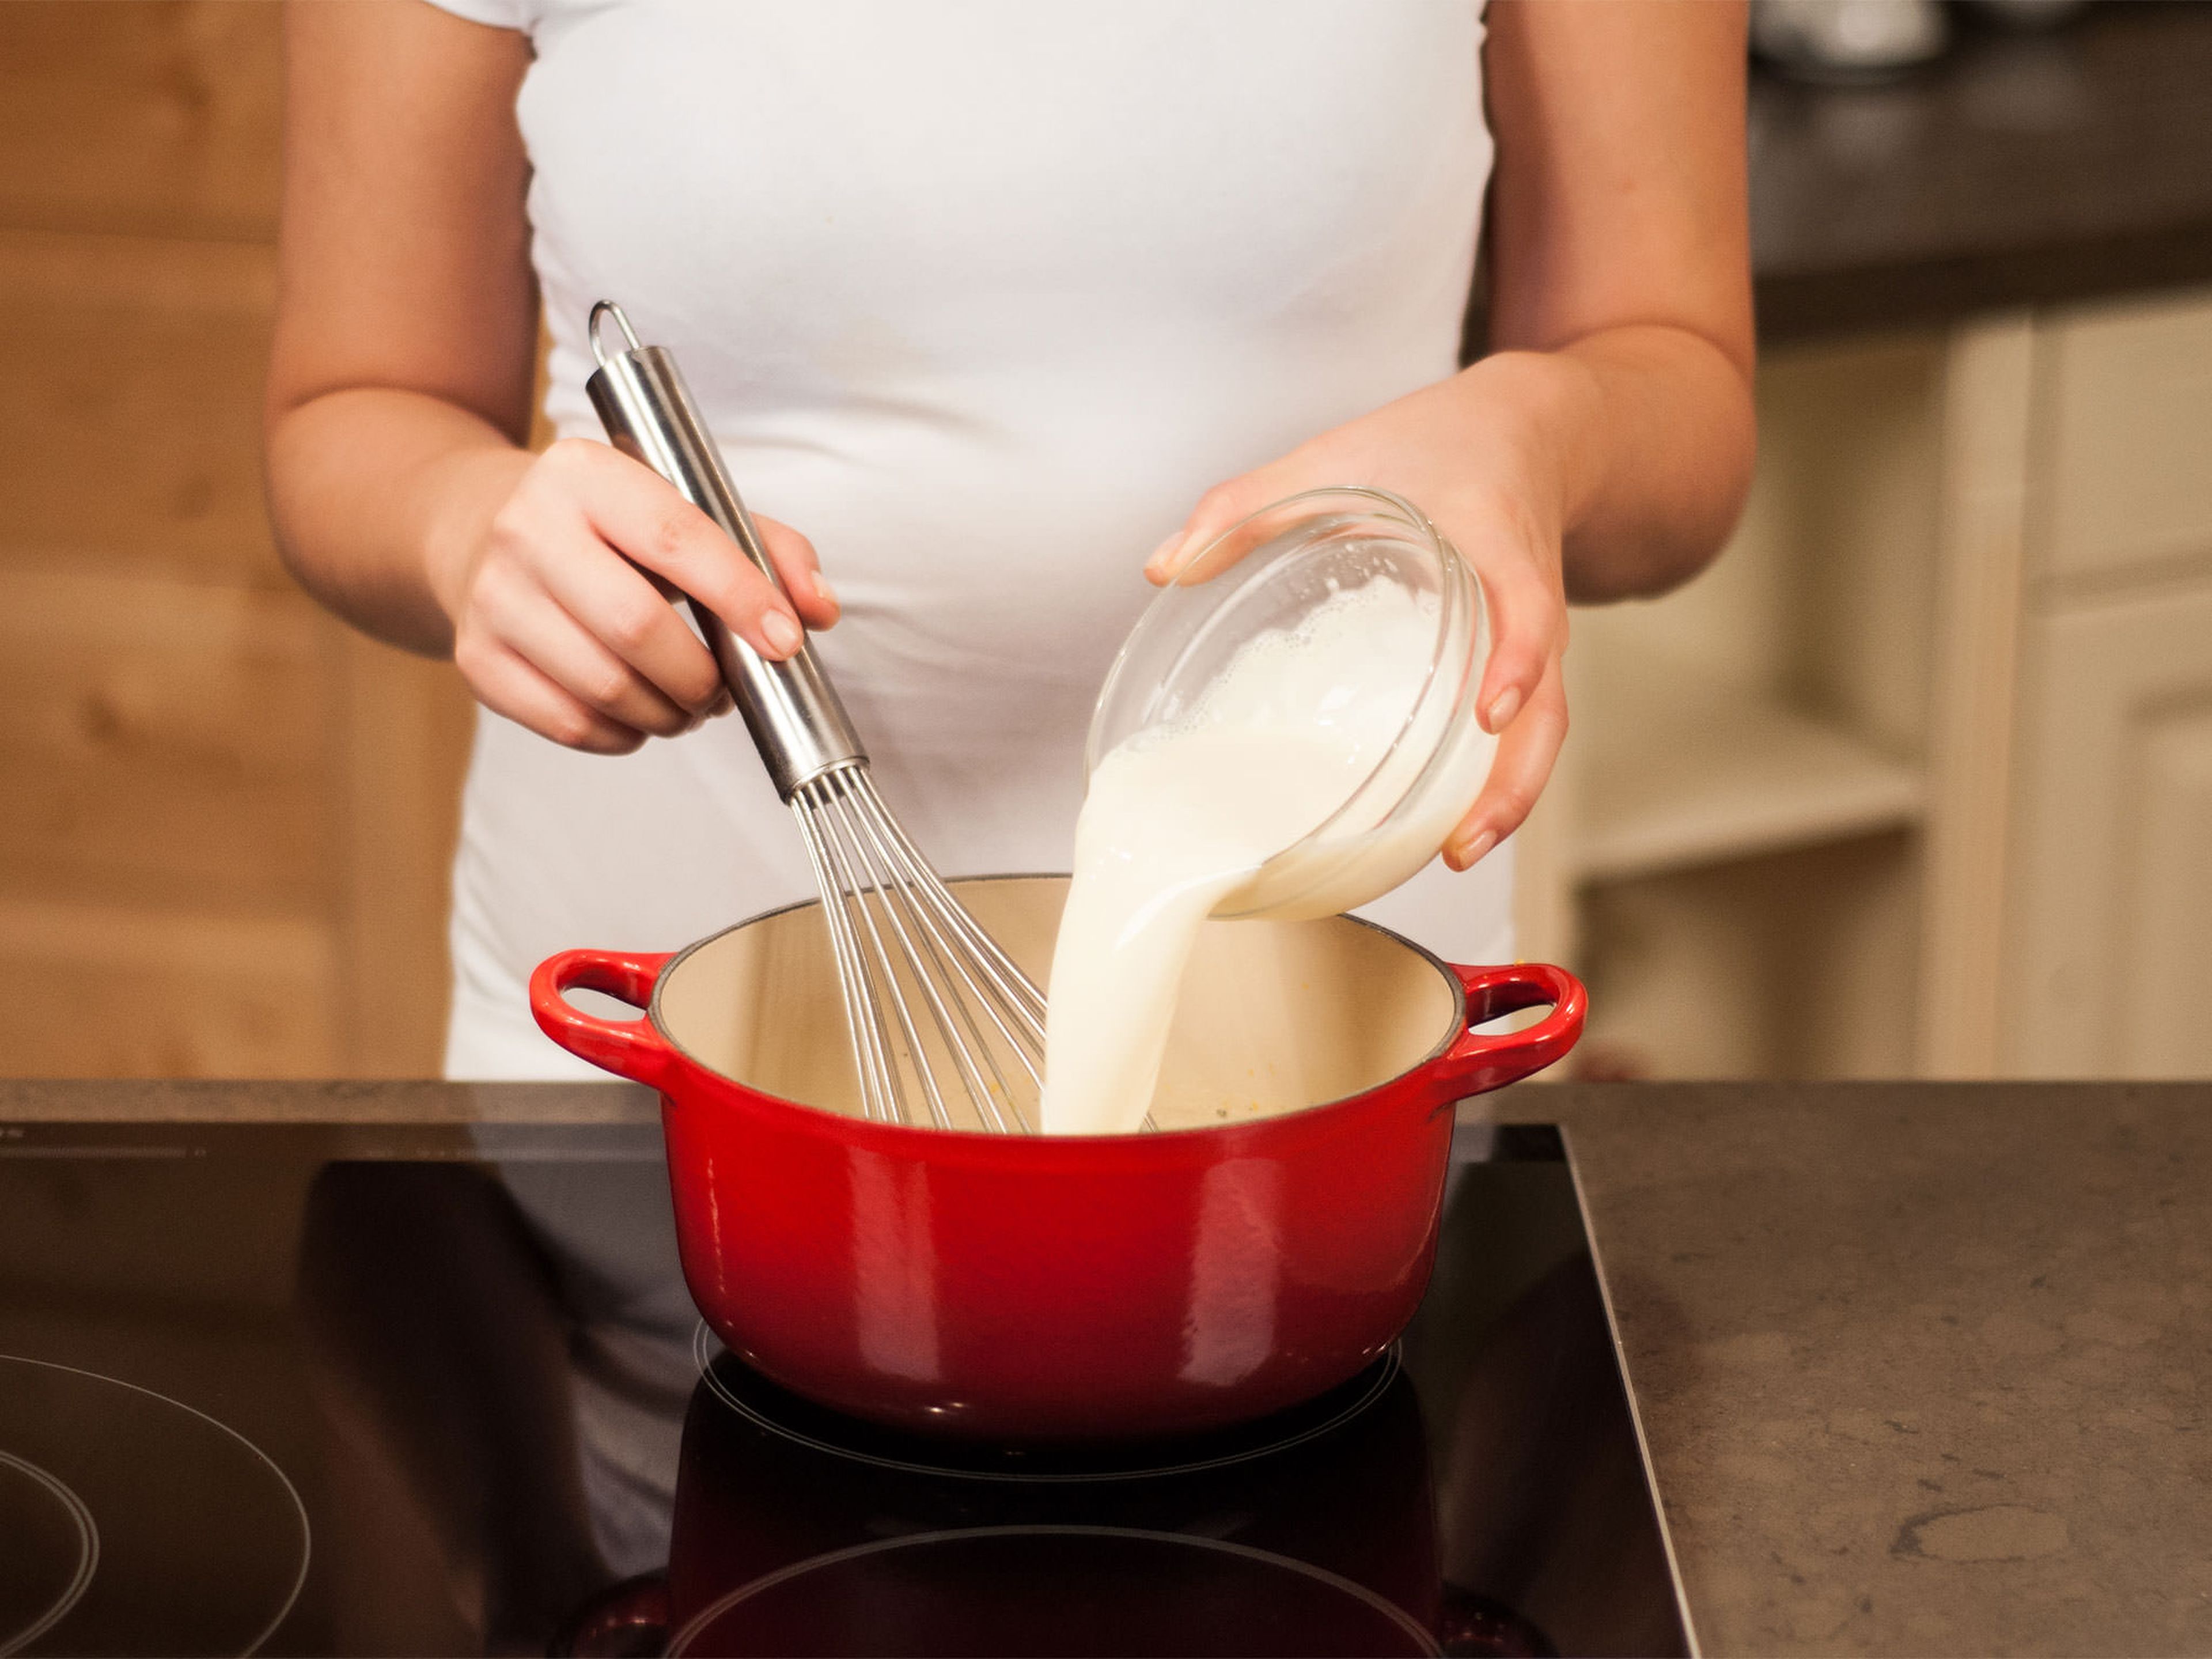 Aufgelöste Stärke mit einem Schneebesen in die Sojamilchmischung rühren. Aufkochen, dabei ständig rühren. Anschließend Pudding in kleine Seviergläser füllen und abkühlen lassen.